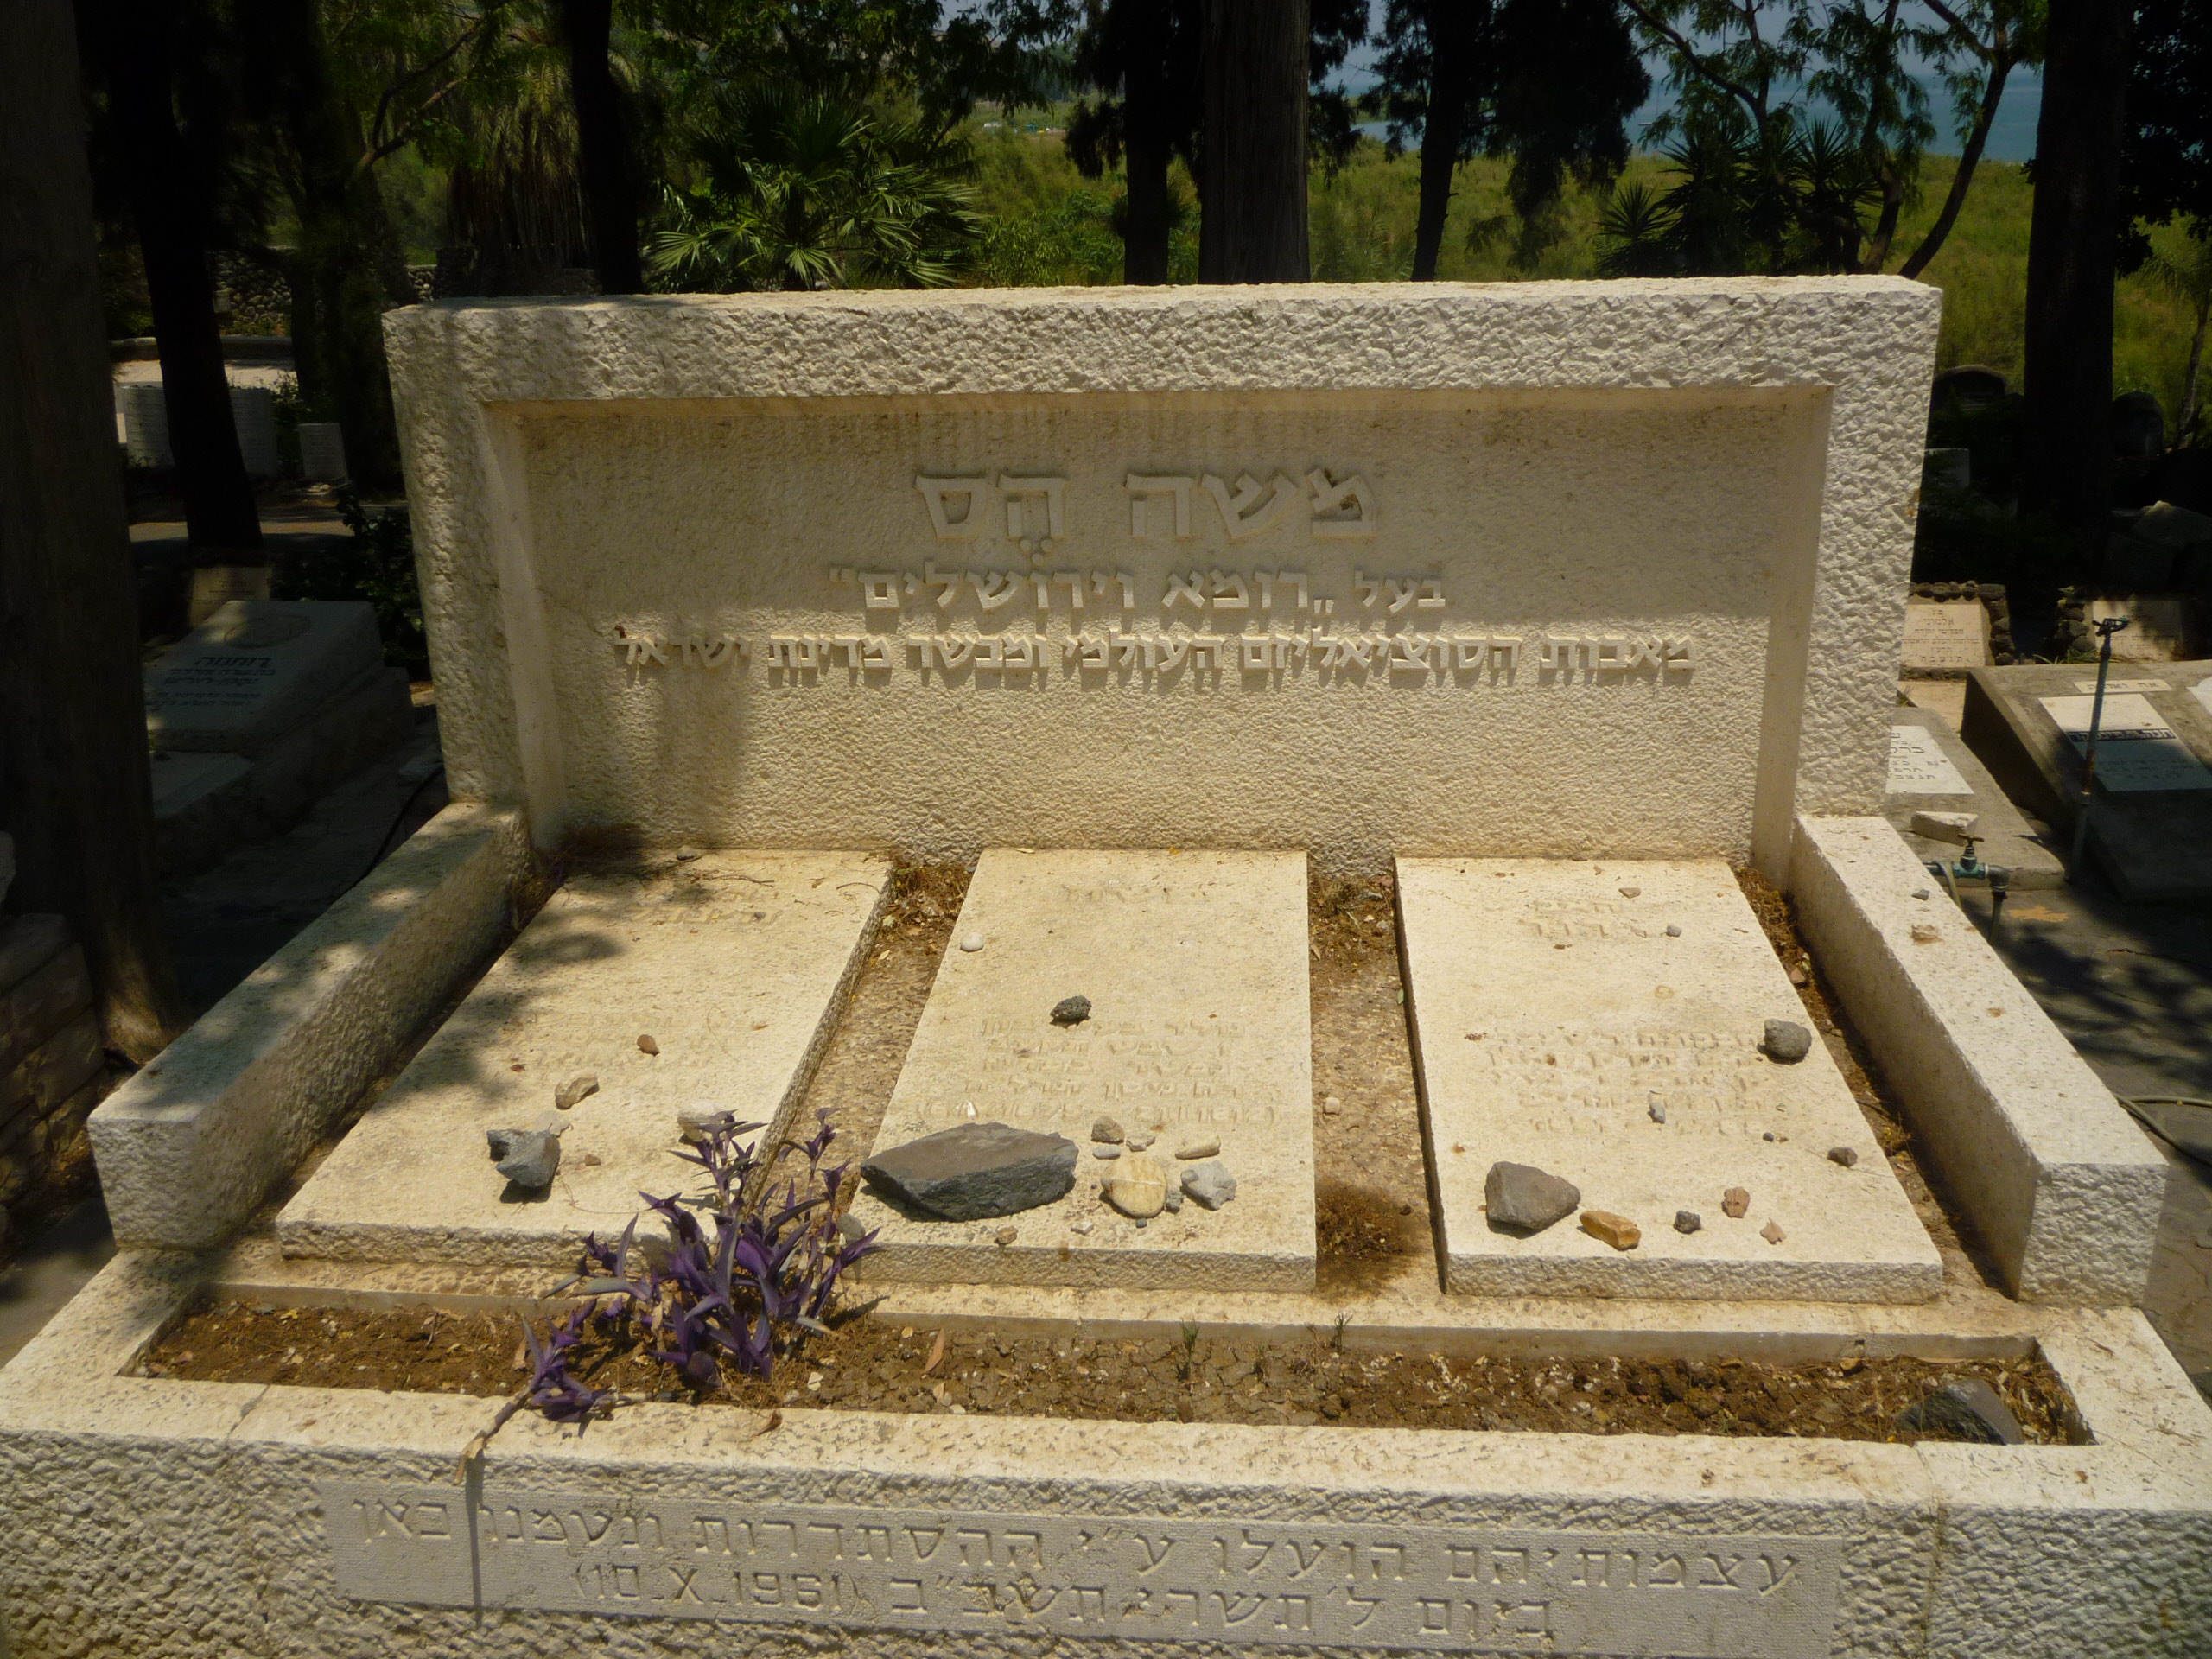 Hess _grave_in_israel.JPG